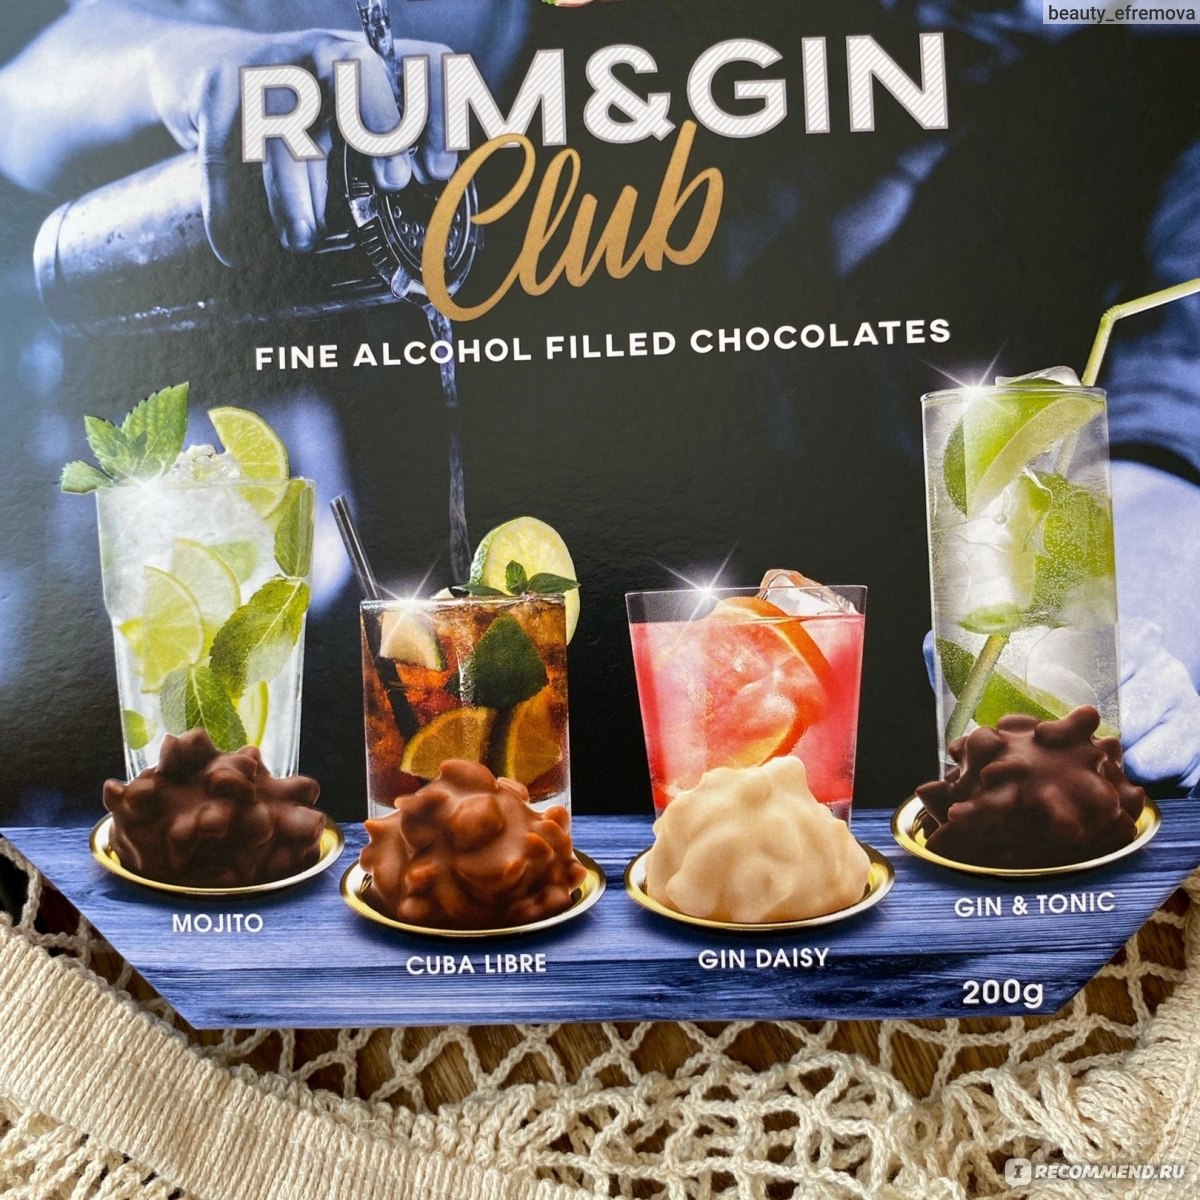 Конфеты Trumpf edle Tropfen in Nuss rum & Gin Club